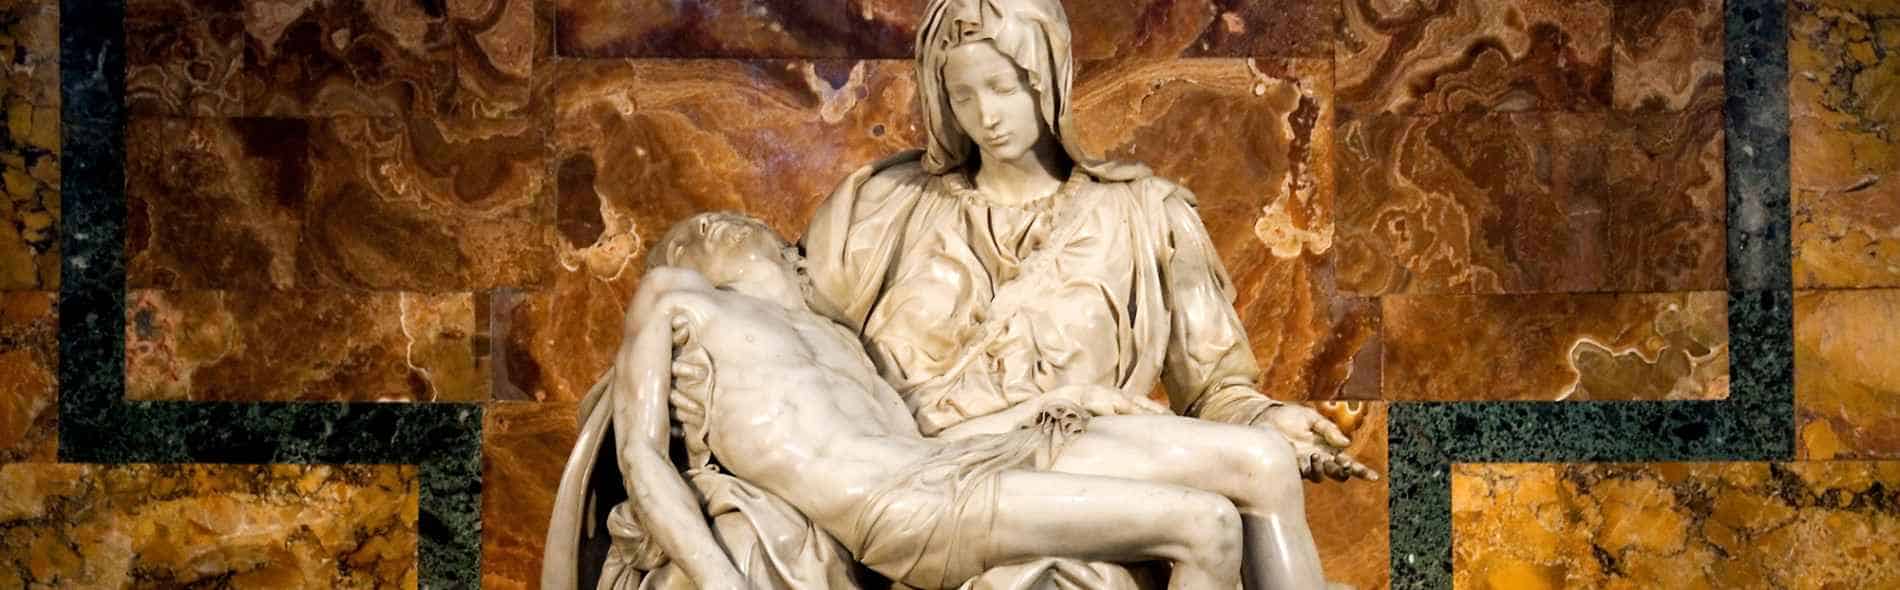 La Pietà di Michelangelo, Basilica San Pietro, visite guidate private